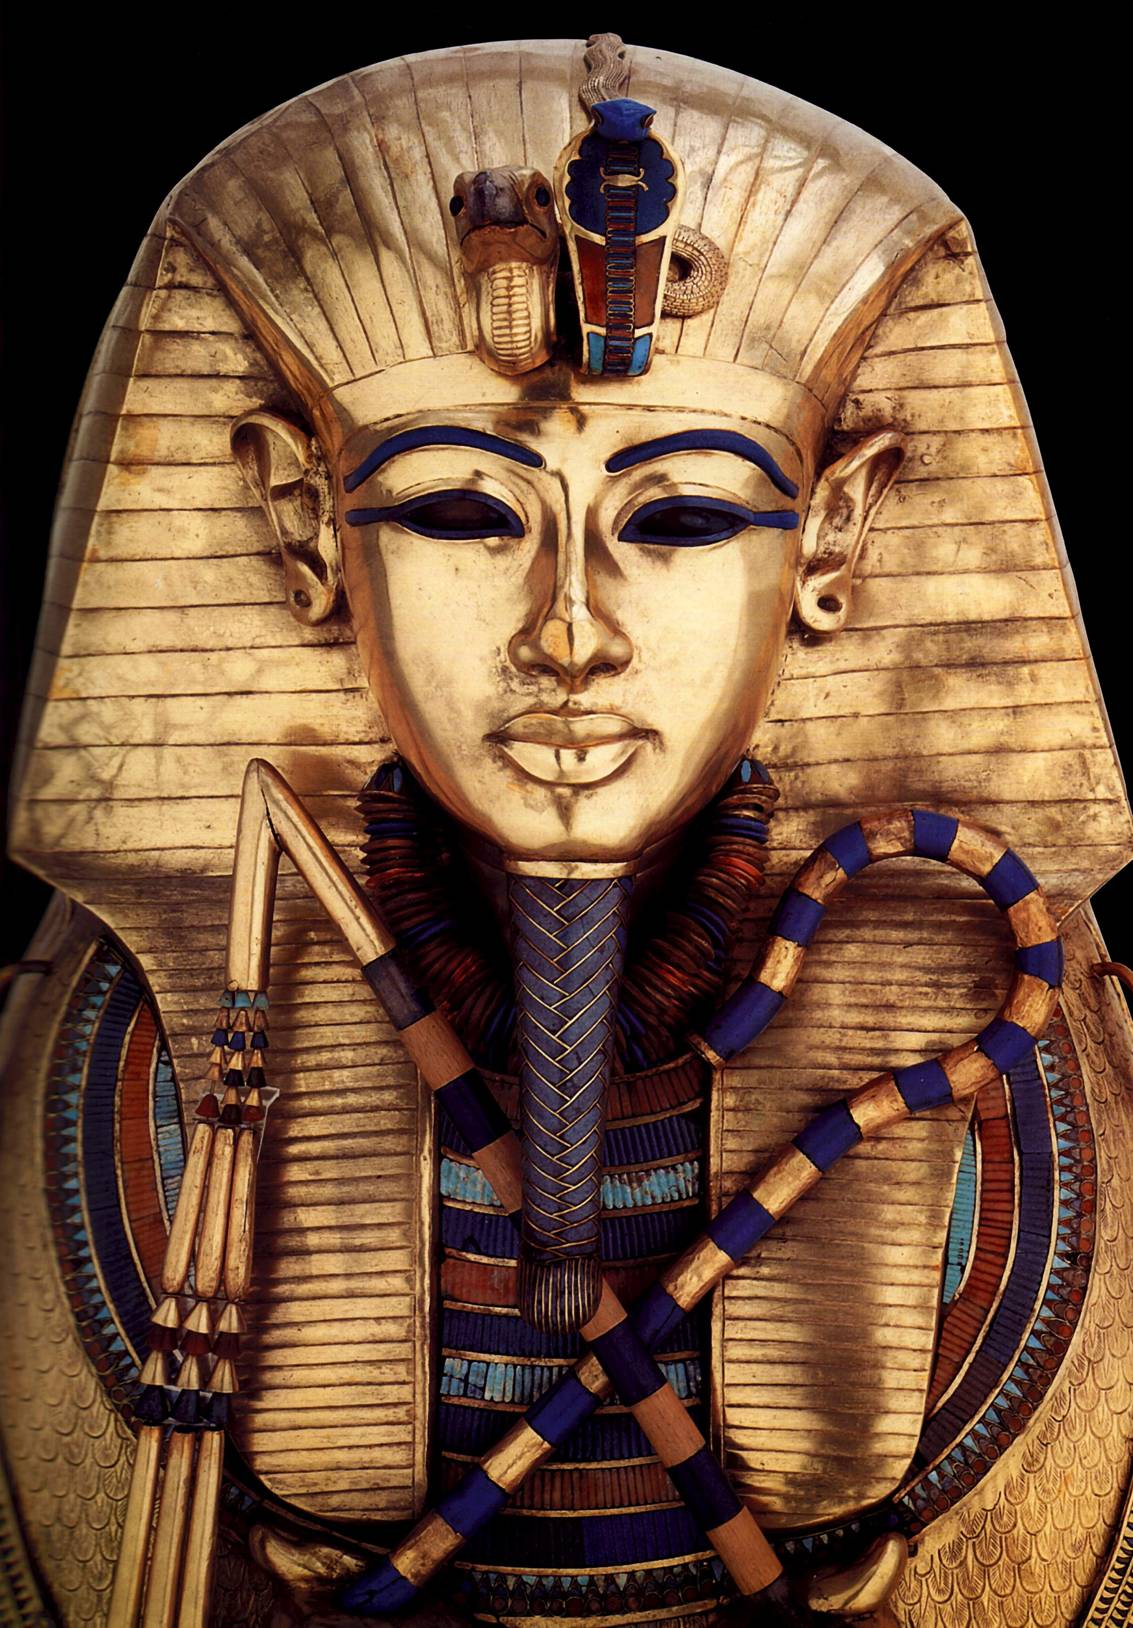 Саркофаг фараона Тутанхамона